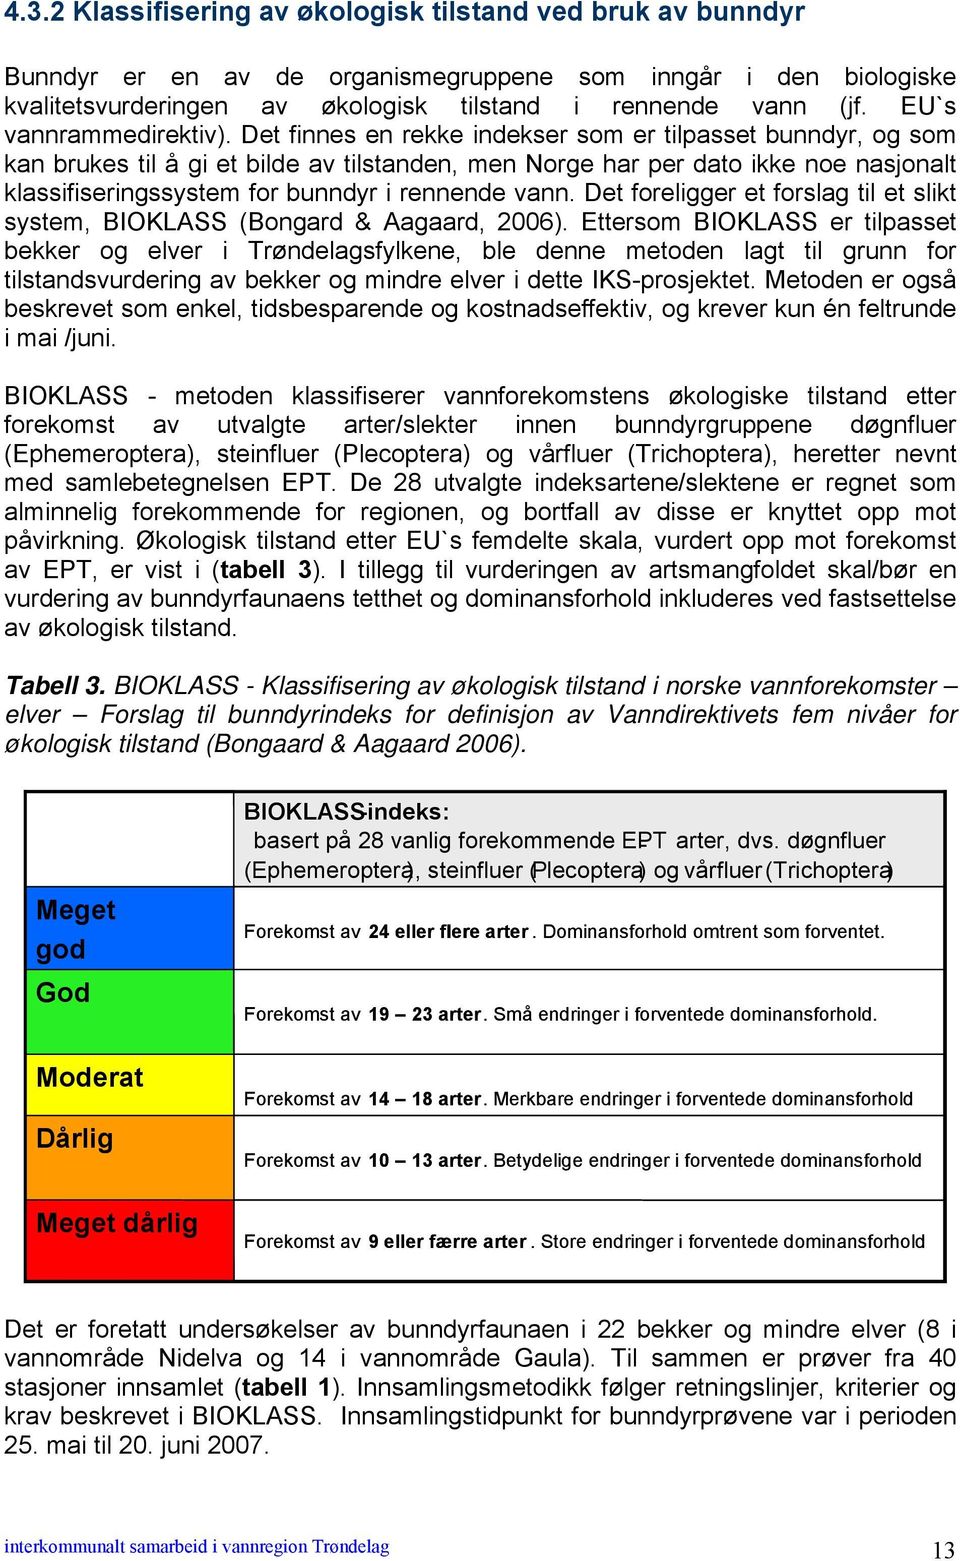 Det finnes en rekke indekser som er tilpasset bunndyr, og som kan brukes til å gi et bilde av tilstanden, men Norge har per dato ikke noe nasjonalt klassifiseringssystem for bunndyr i rennende vann.